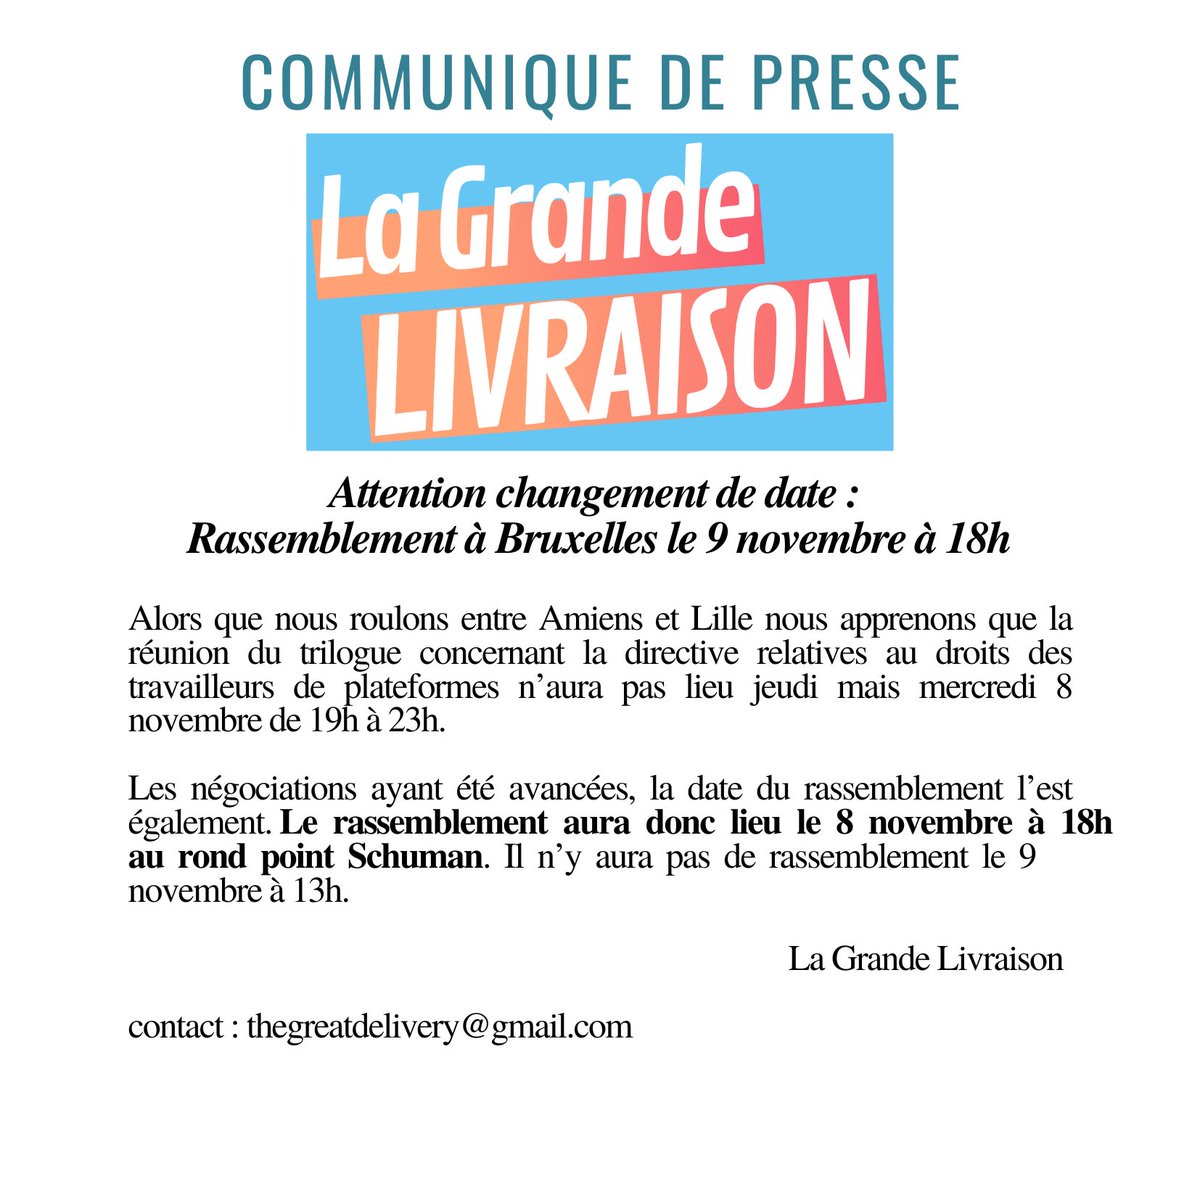 ⚠️#LaGrandeLivraison, changement de date de manifestation 👉 rdv le 8 novembre à 18h au rond point Schuman à Bruxelles

La réunion du trilogue concernant la directive relative aux droits des travailleurs de plateformes étant avancée, le rassemblement l’est également.

À demain